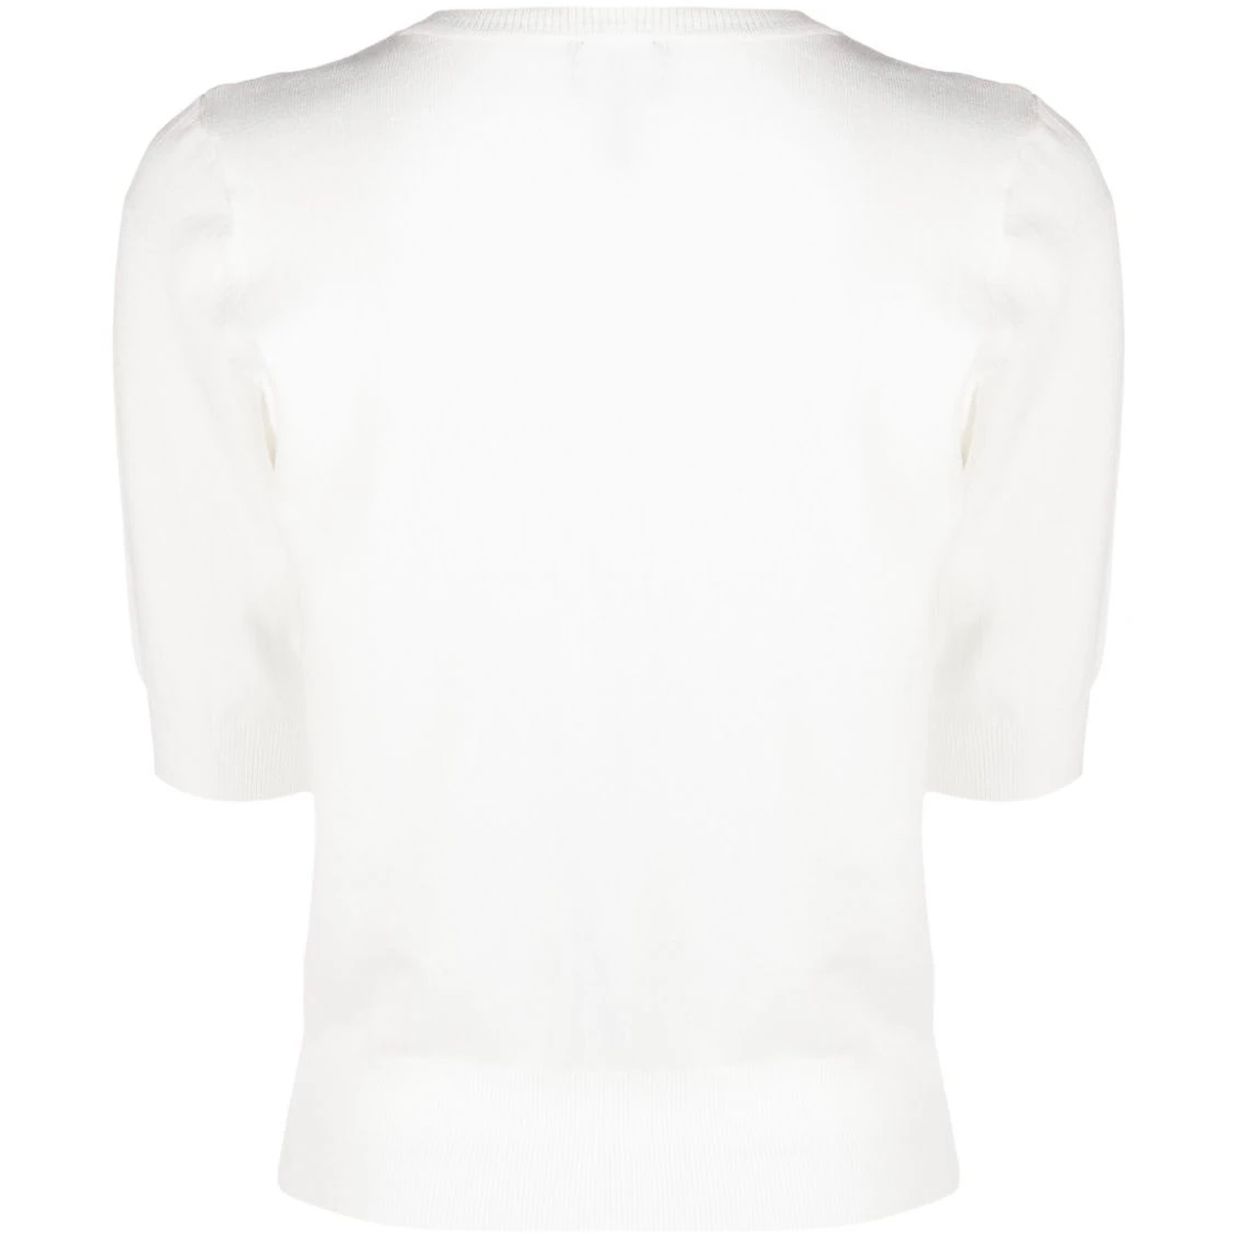 DKNY marškiniai moterims, Balta, S/s mesh v crewneck